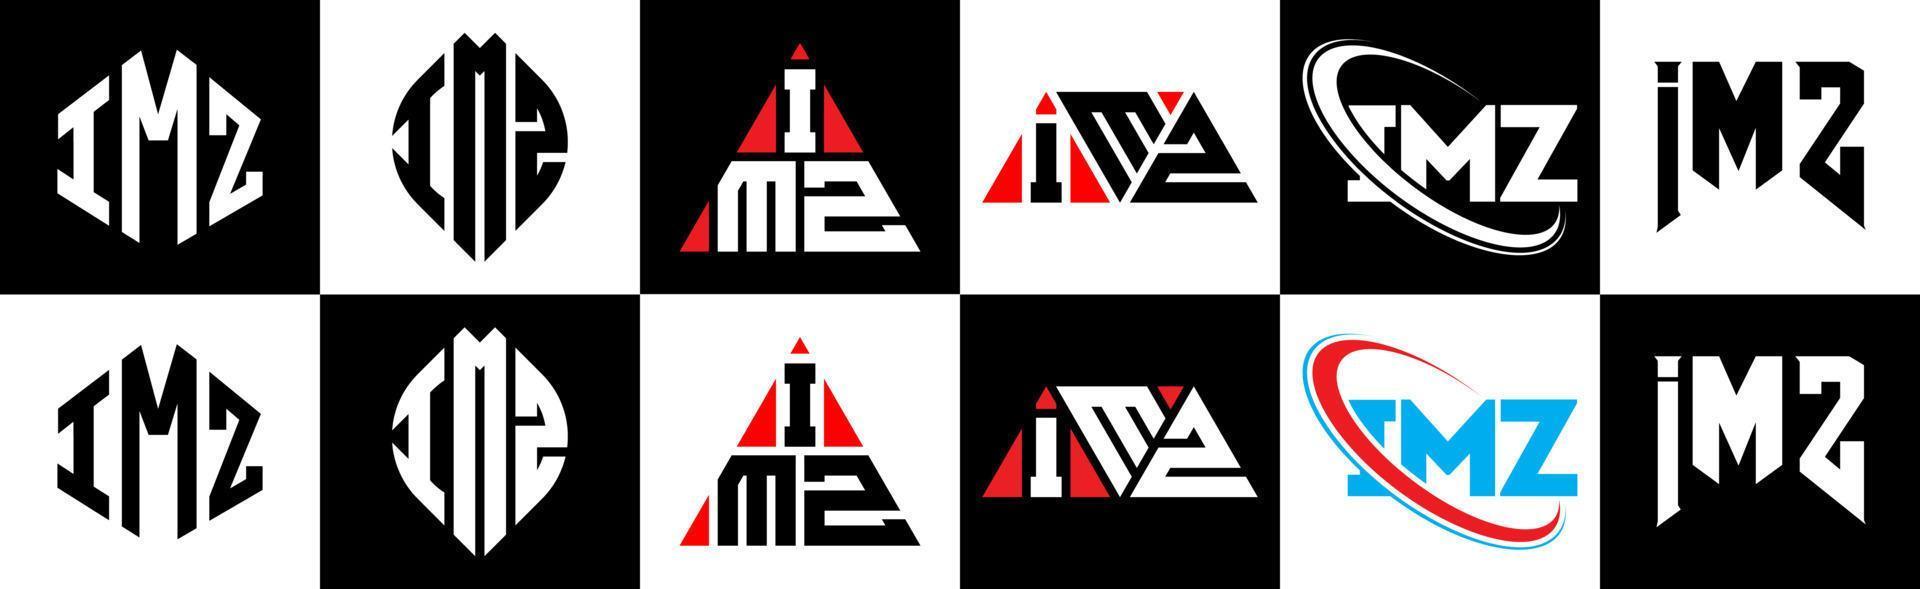 Diseño de logotipo de letra imz en seis estilos. imz polígono, círculo, triángulo, hexágono, estilo plano y simple con logotipo de letra de variación de color blanco y negro en una mesa de trabajo. logotipo minimalista y clásico de imz vector